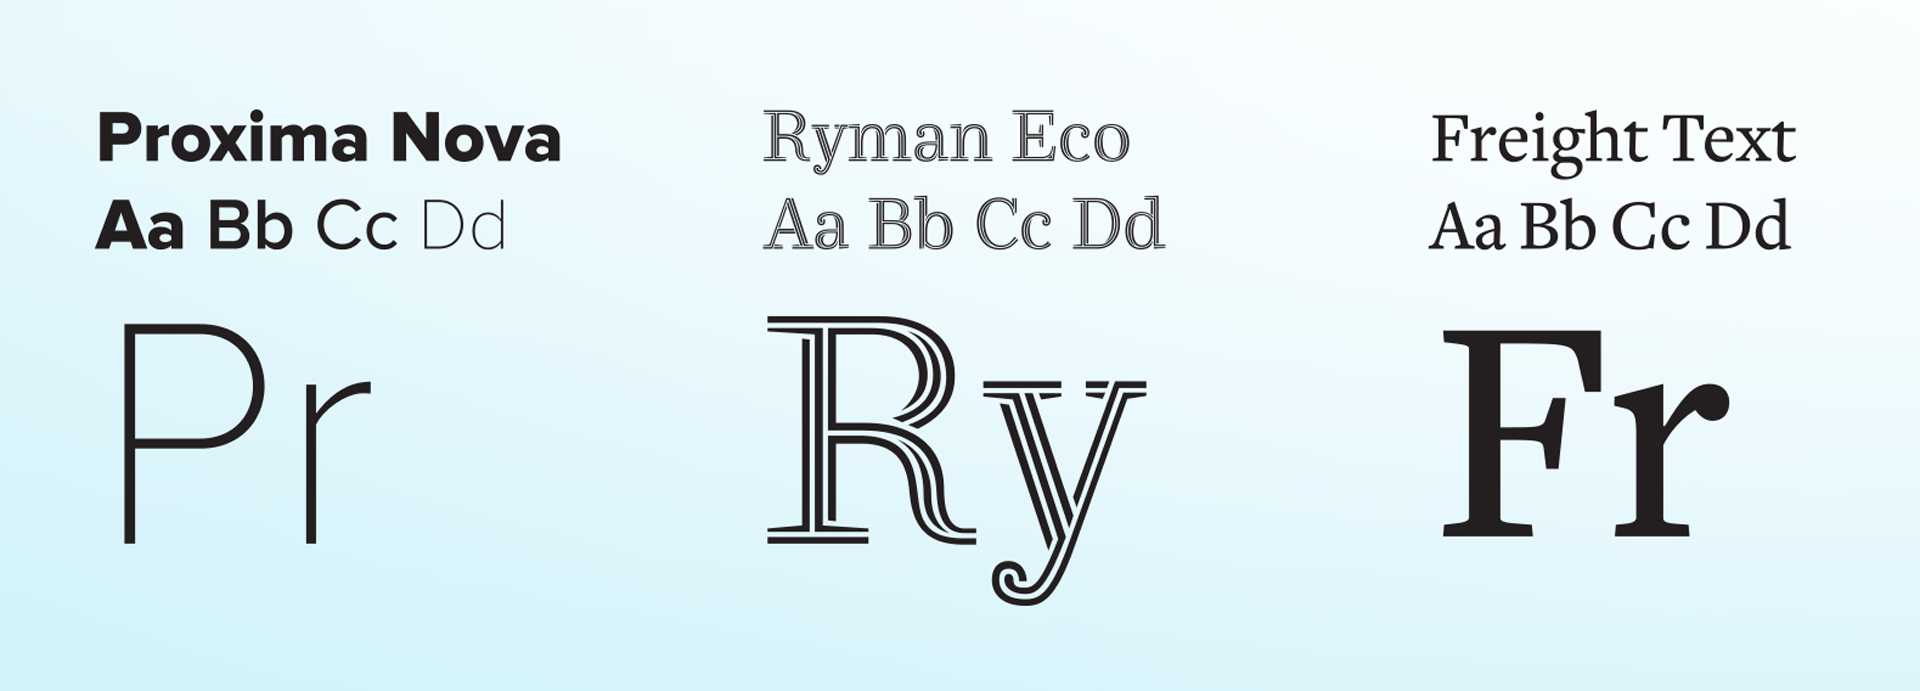 Example of all three fonts, Proxima Nova, Ryman Eco and Freight Text